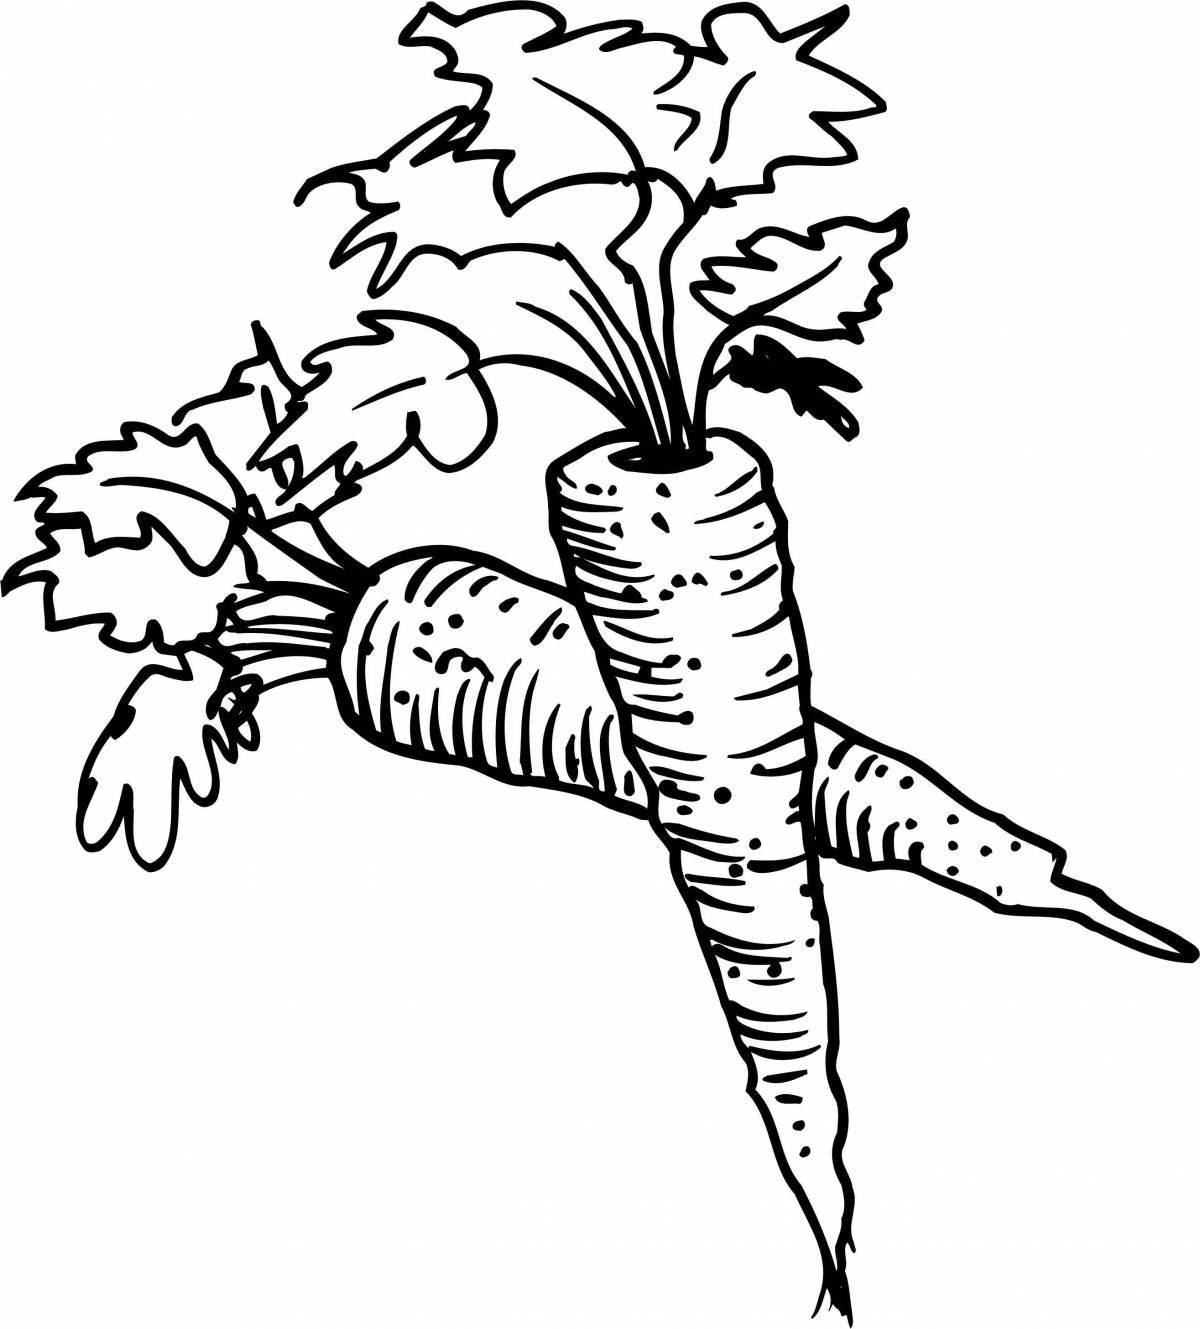 Веселый рисунок моркови для детей